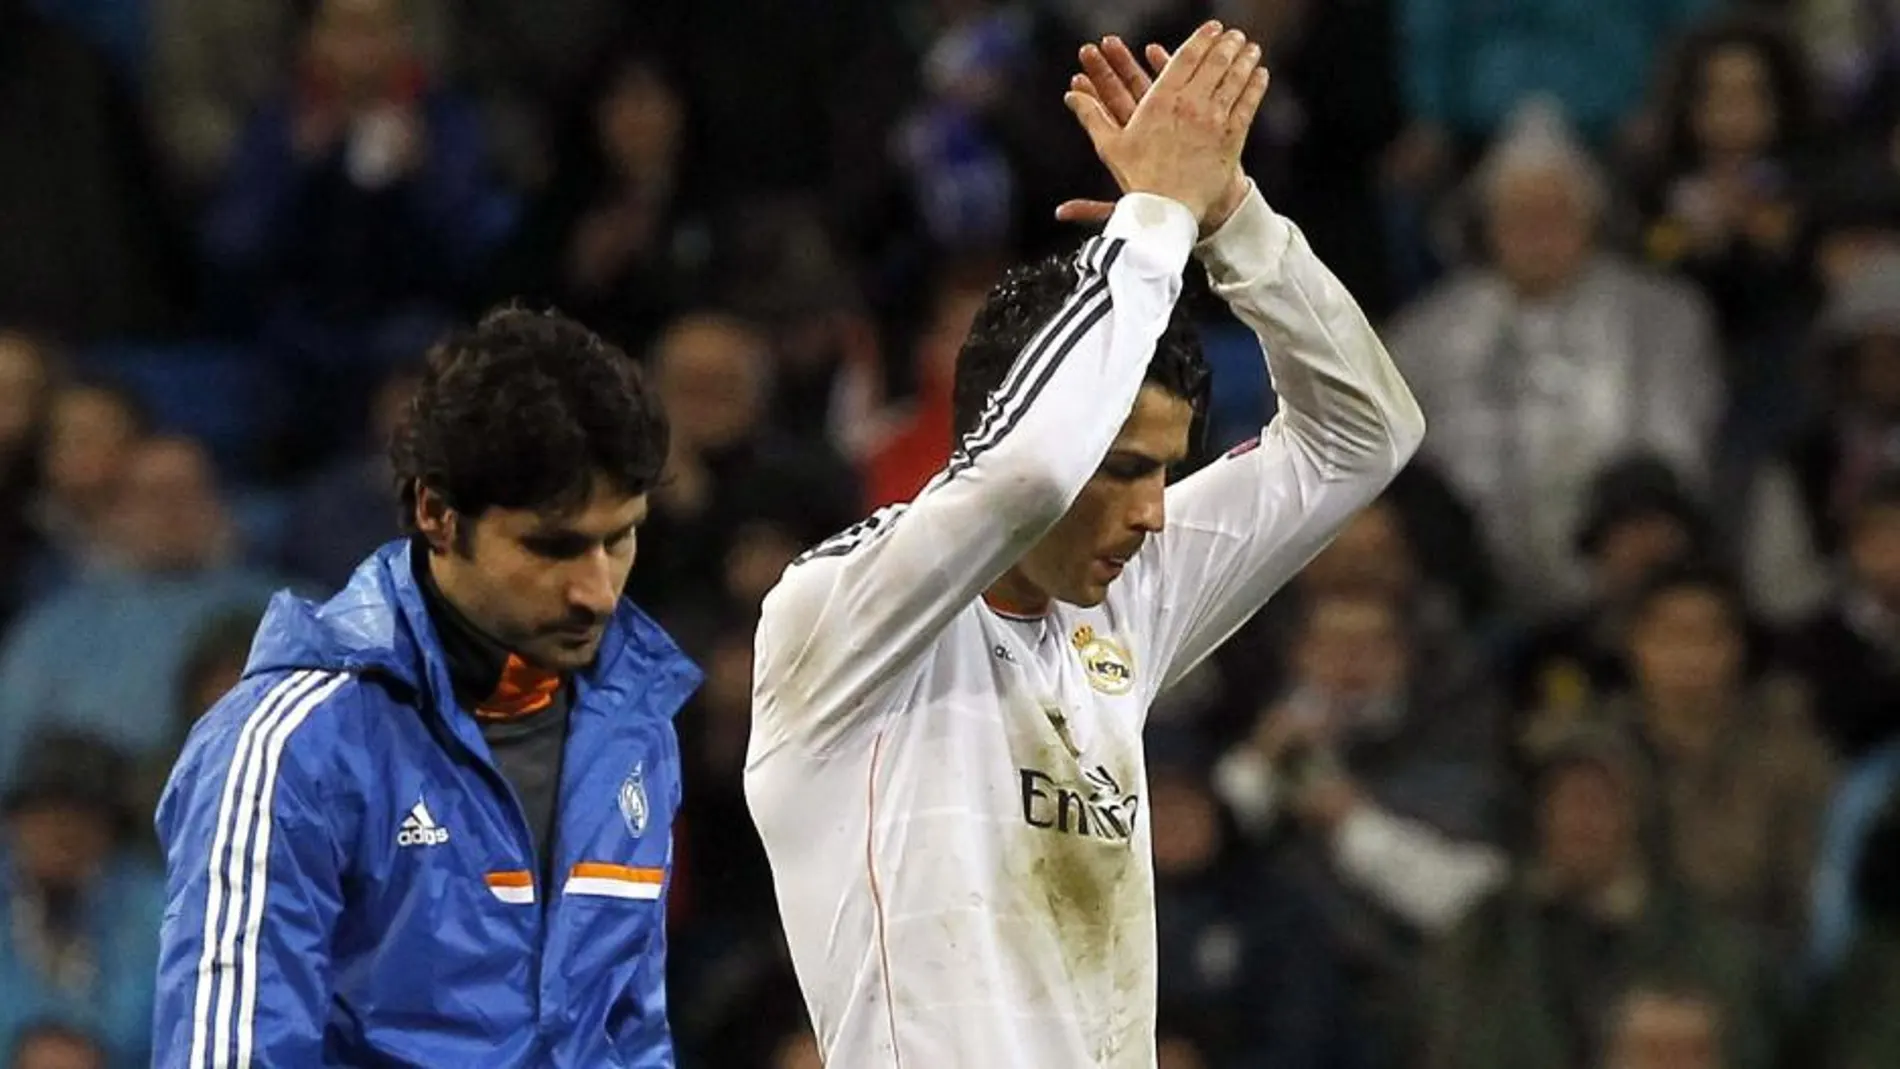 El delantero del Real Madrid Cristiano Ronaldo saluda a los aficionados a su salida del césped